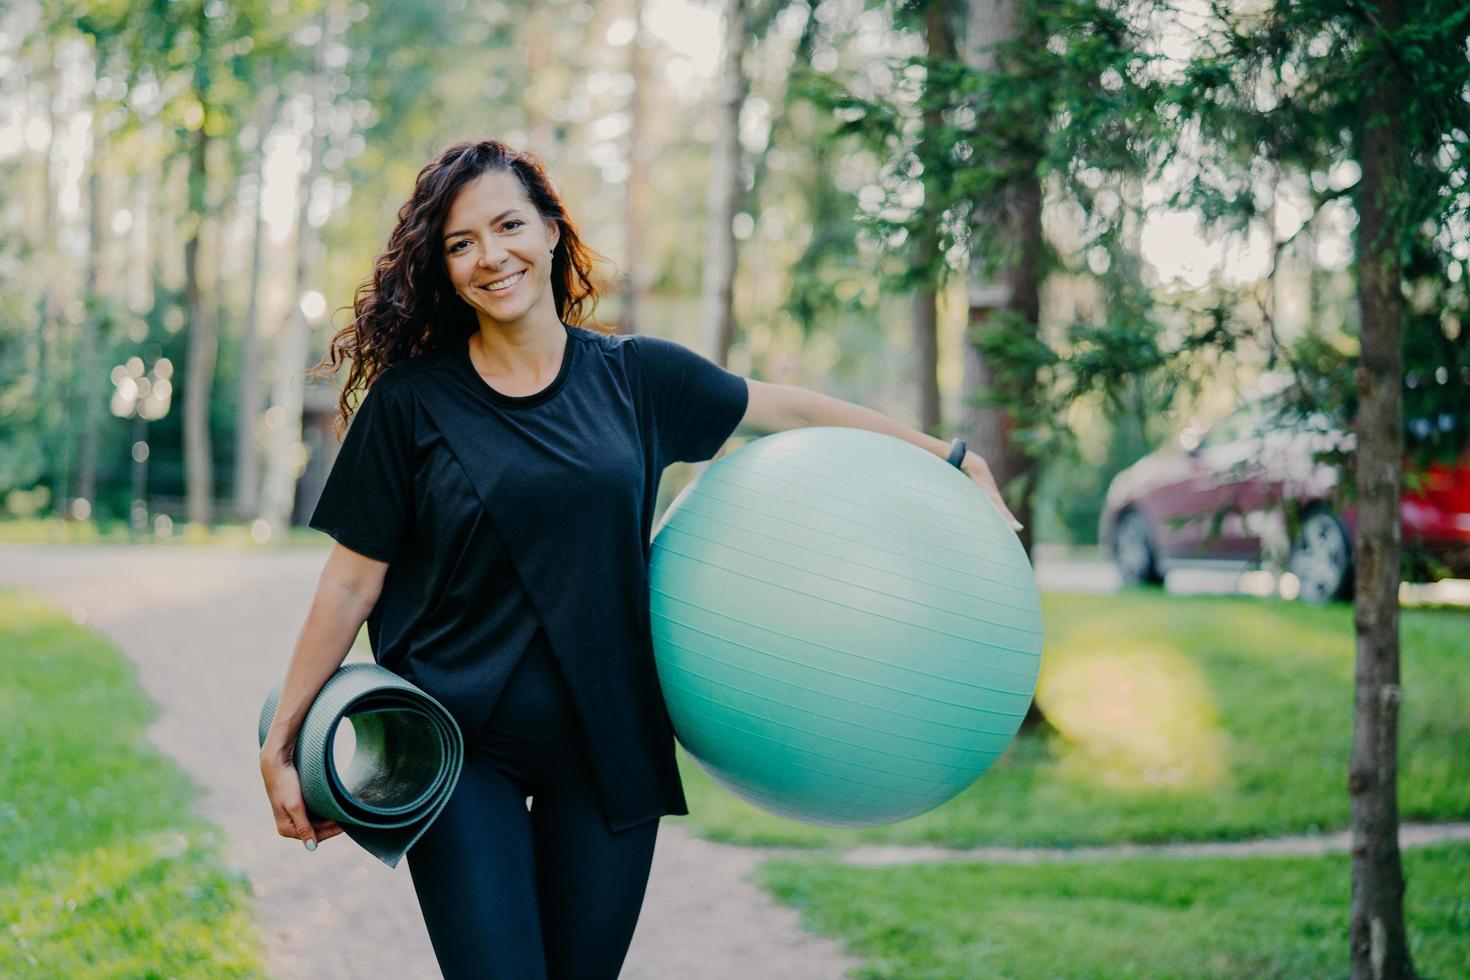 femme brune ravie vêtue d'un t-shirt noir, tient un karemat enroulé et un ballon de fitness, se prépare pour des exercices d'aérobic, sourit agréablement, pose sur fond de nature. concept de personnes et de sport photo